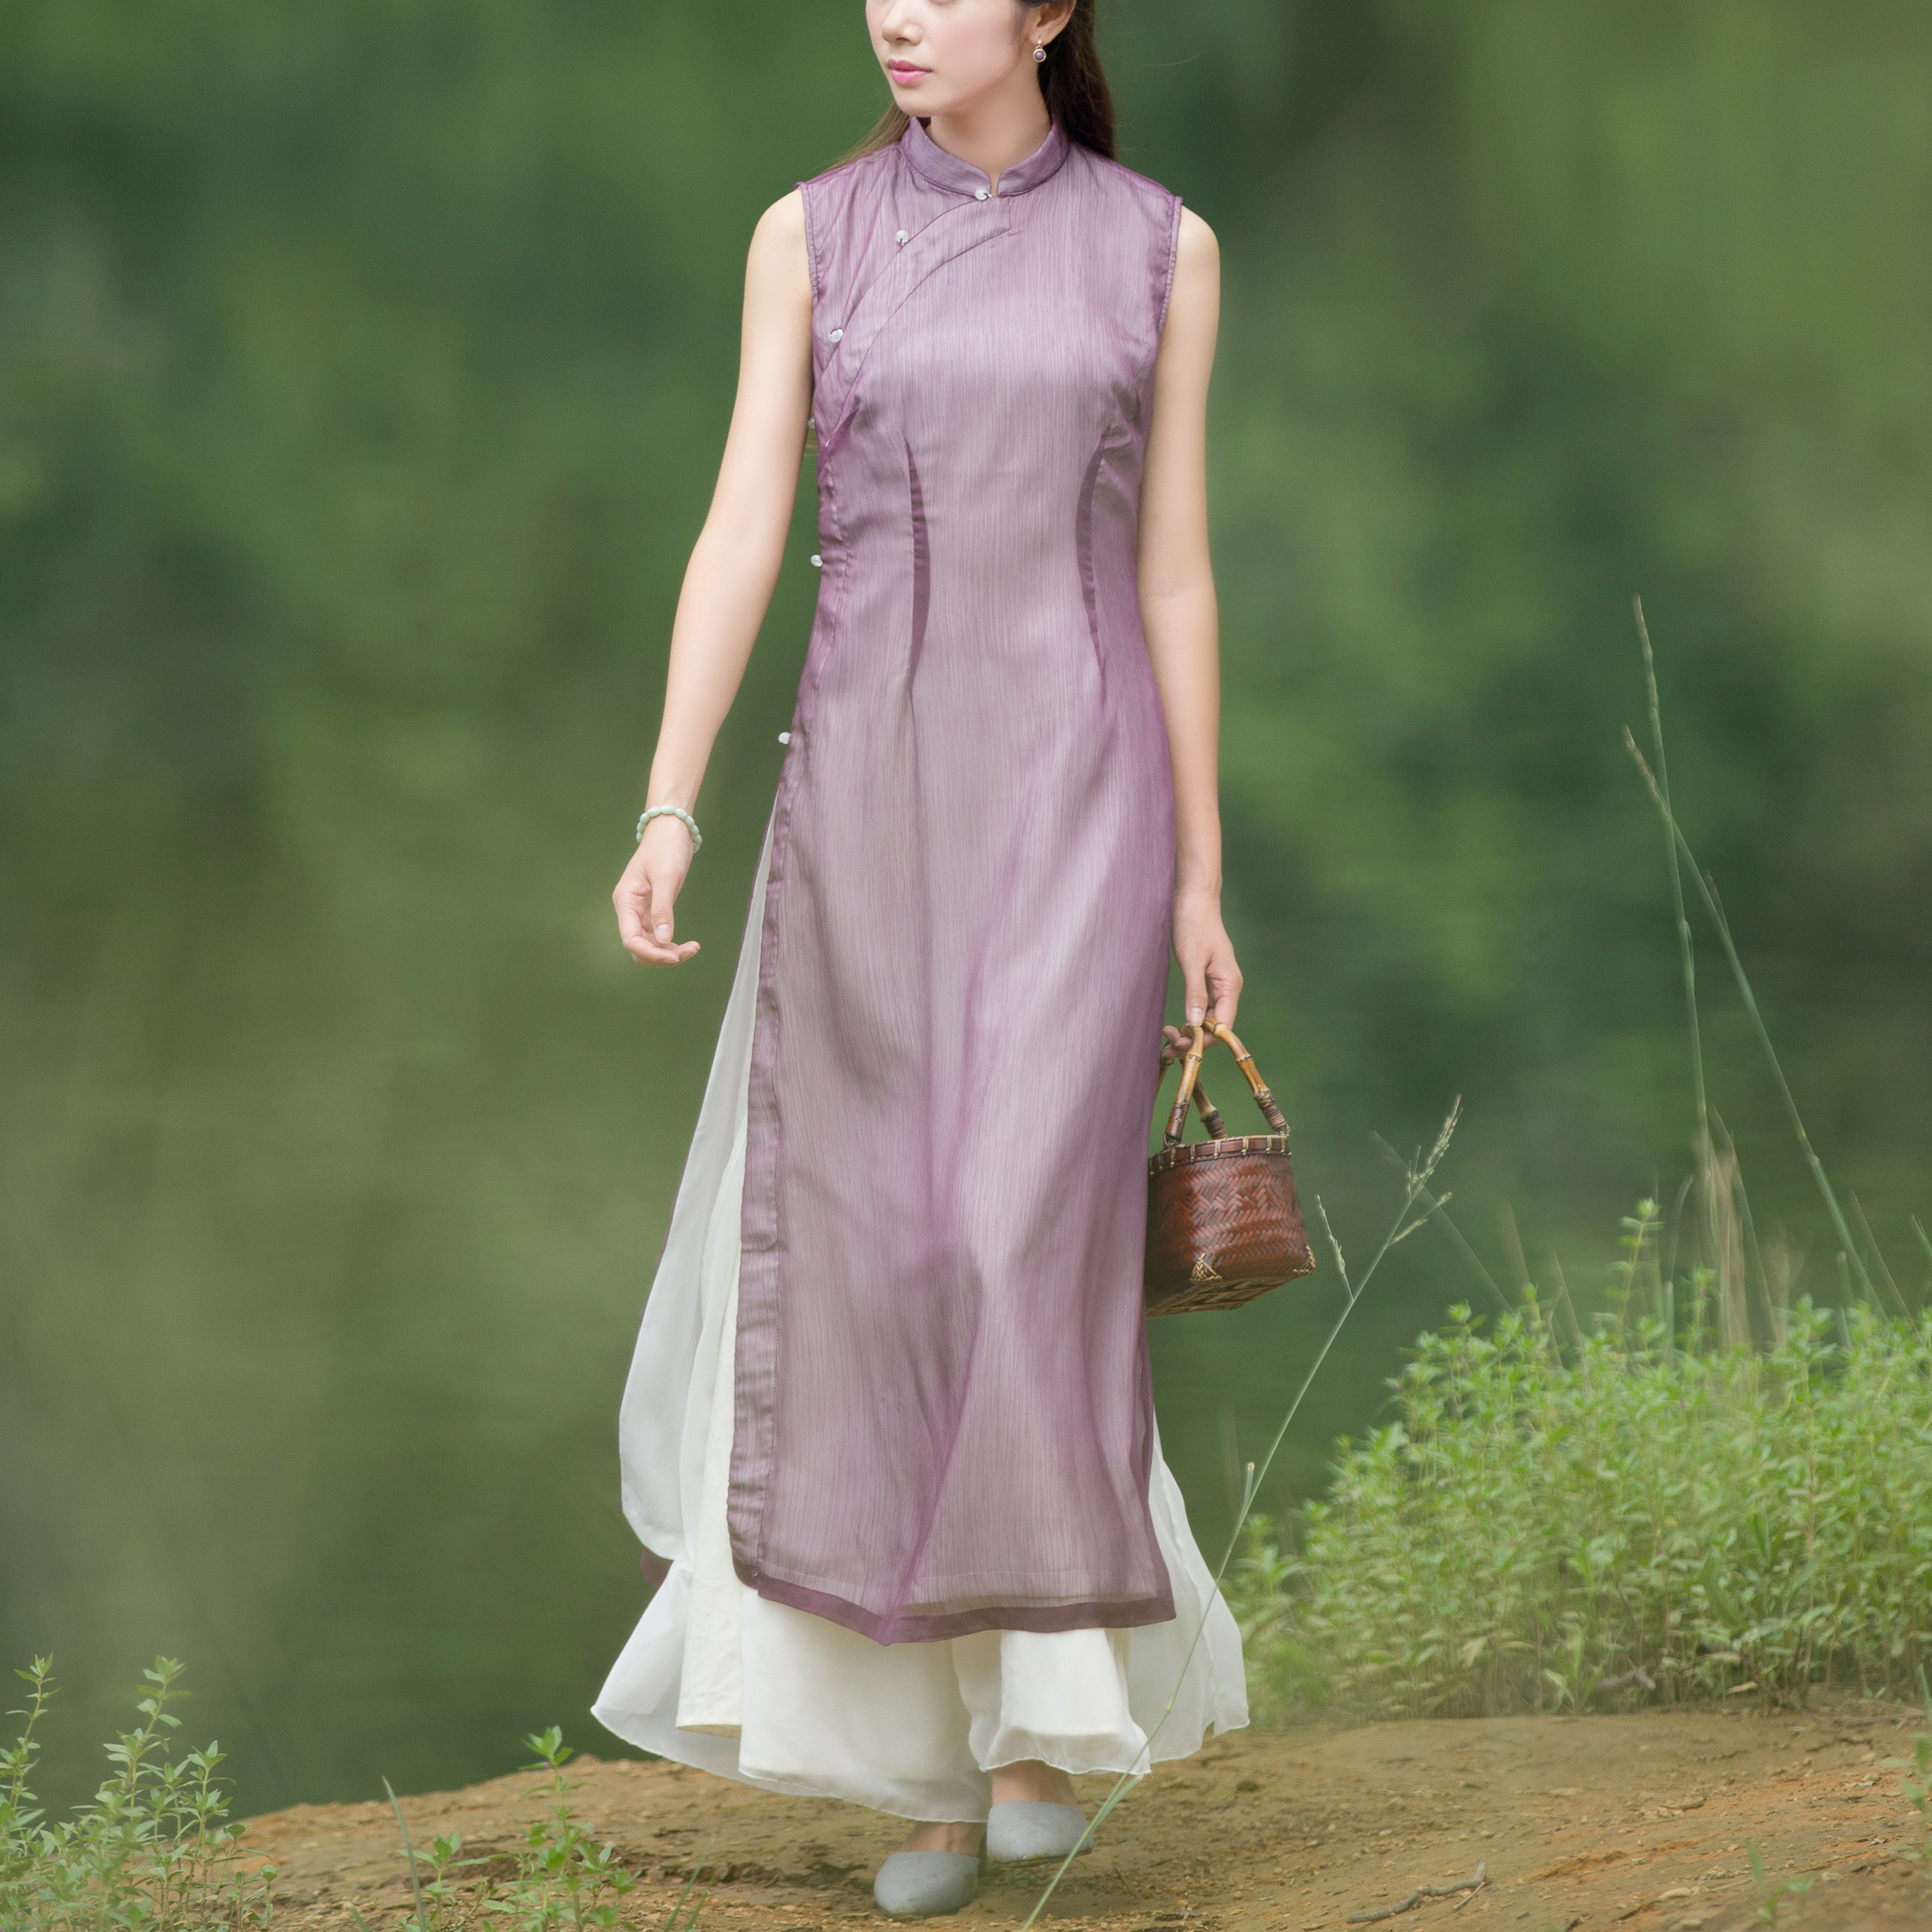 夕烟-山有色奥黛原创设计中国风女装文艺复古连衣裙飘逸长裙新品